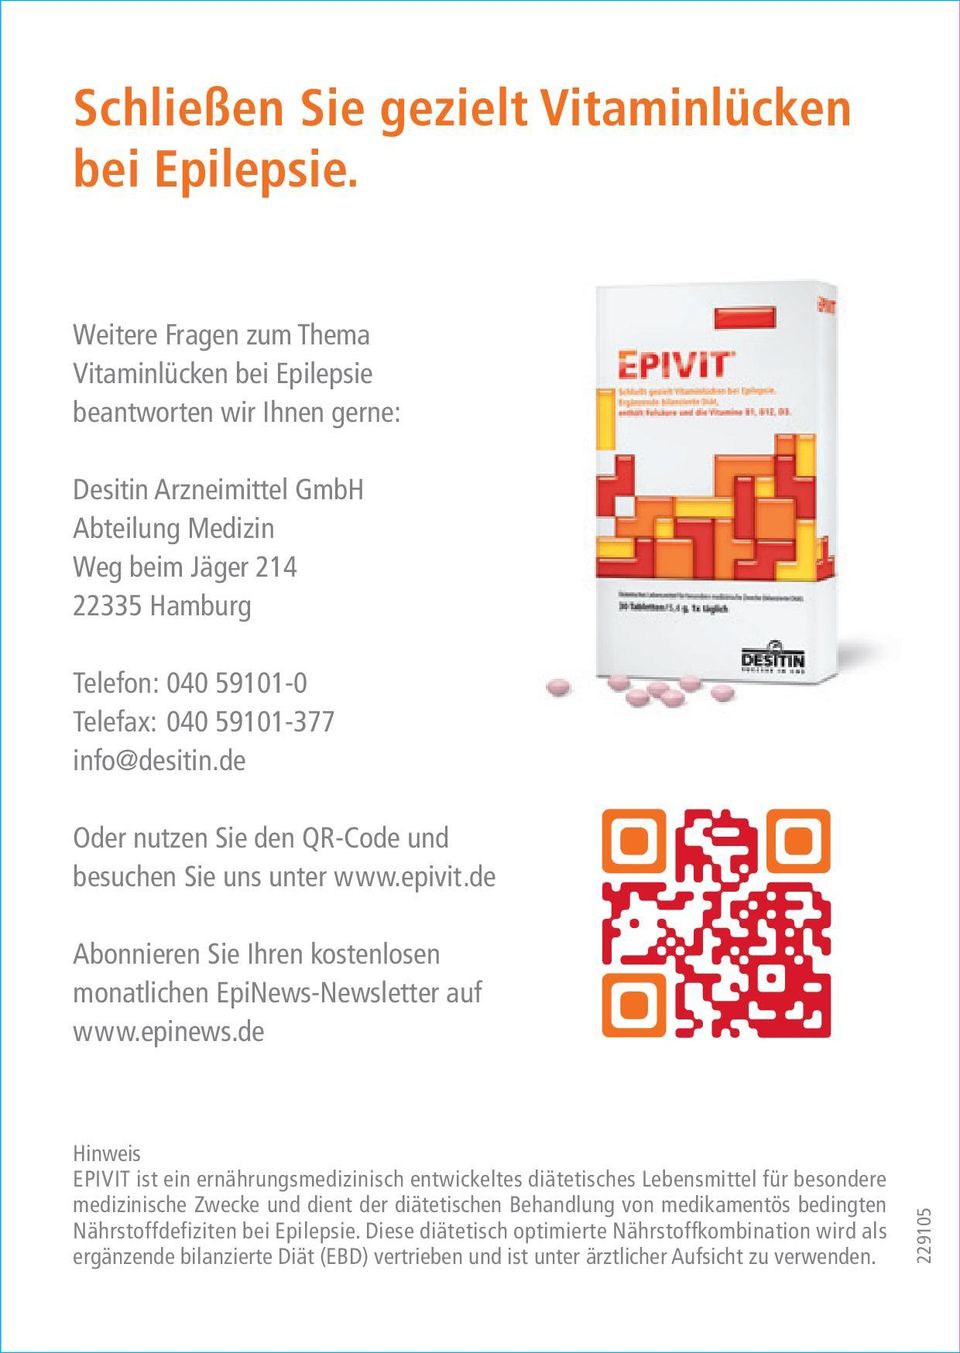 59101-377 info@desitin.de Oder nutzen Sie den QR-Code und besuchen Sie uns unter www.epivit.de Abonnieren Sie Ihren kostenlosen monatlichen EpiNews-Newsletter auf www.epinews.